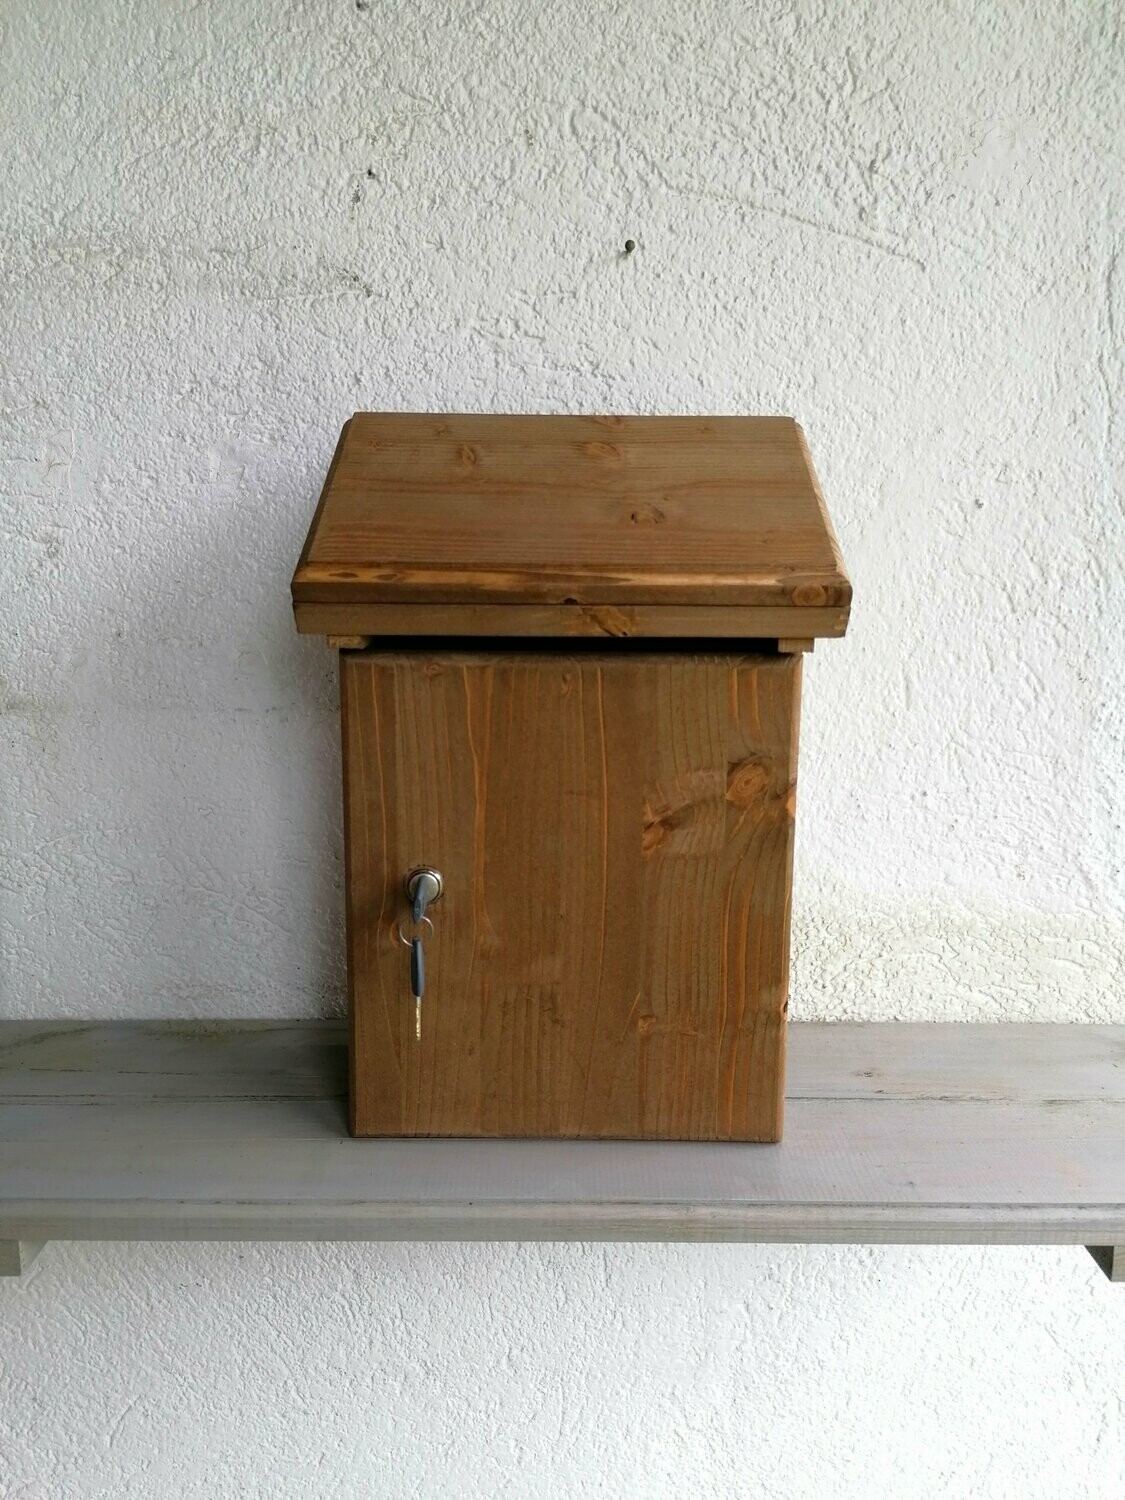 Cassetta Postale porta lettere da esterno in legno di Abete misure L24 x  P16 x H39, prodotto per Découpage neutro o trattato con impregnante Vari  Colori a scelta